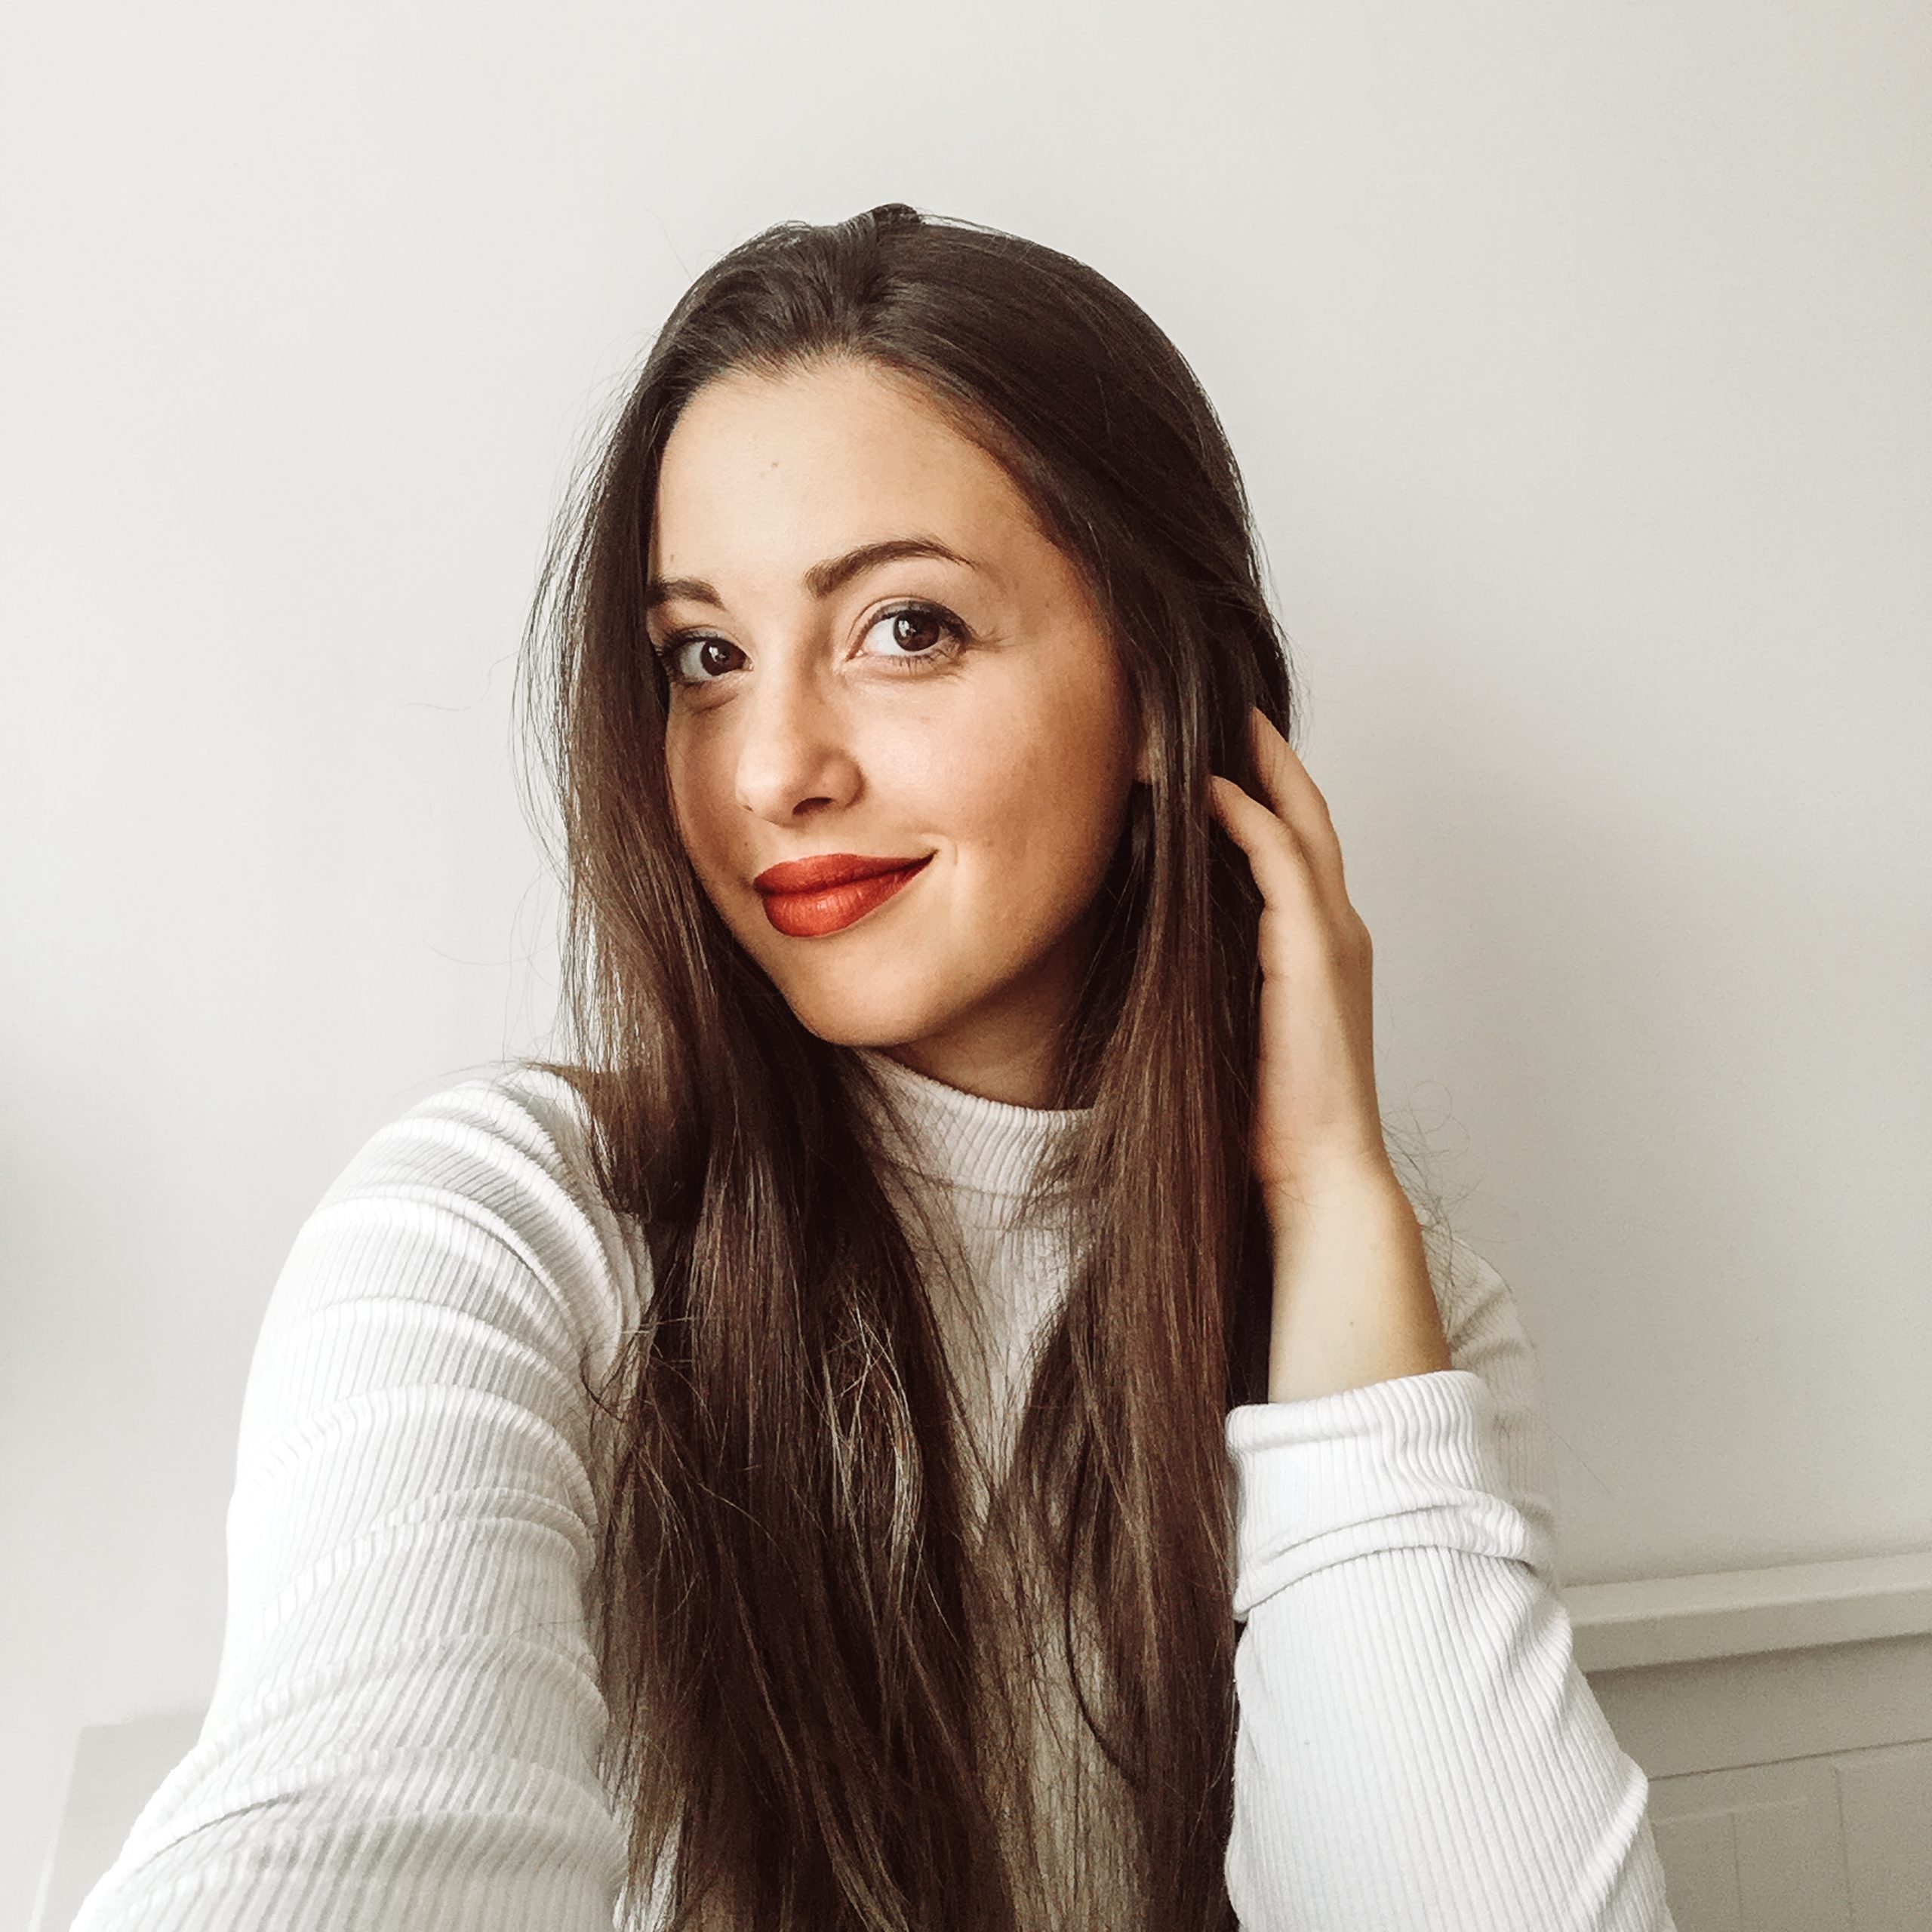 Meet the Blogger - Catarina Morais